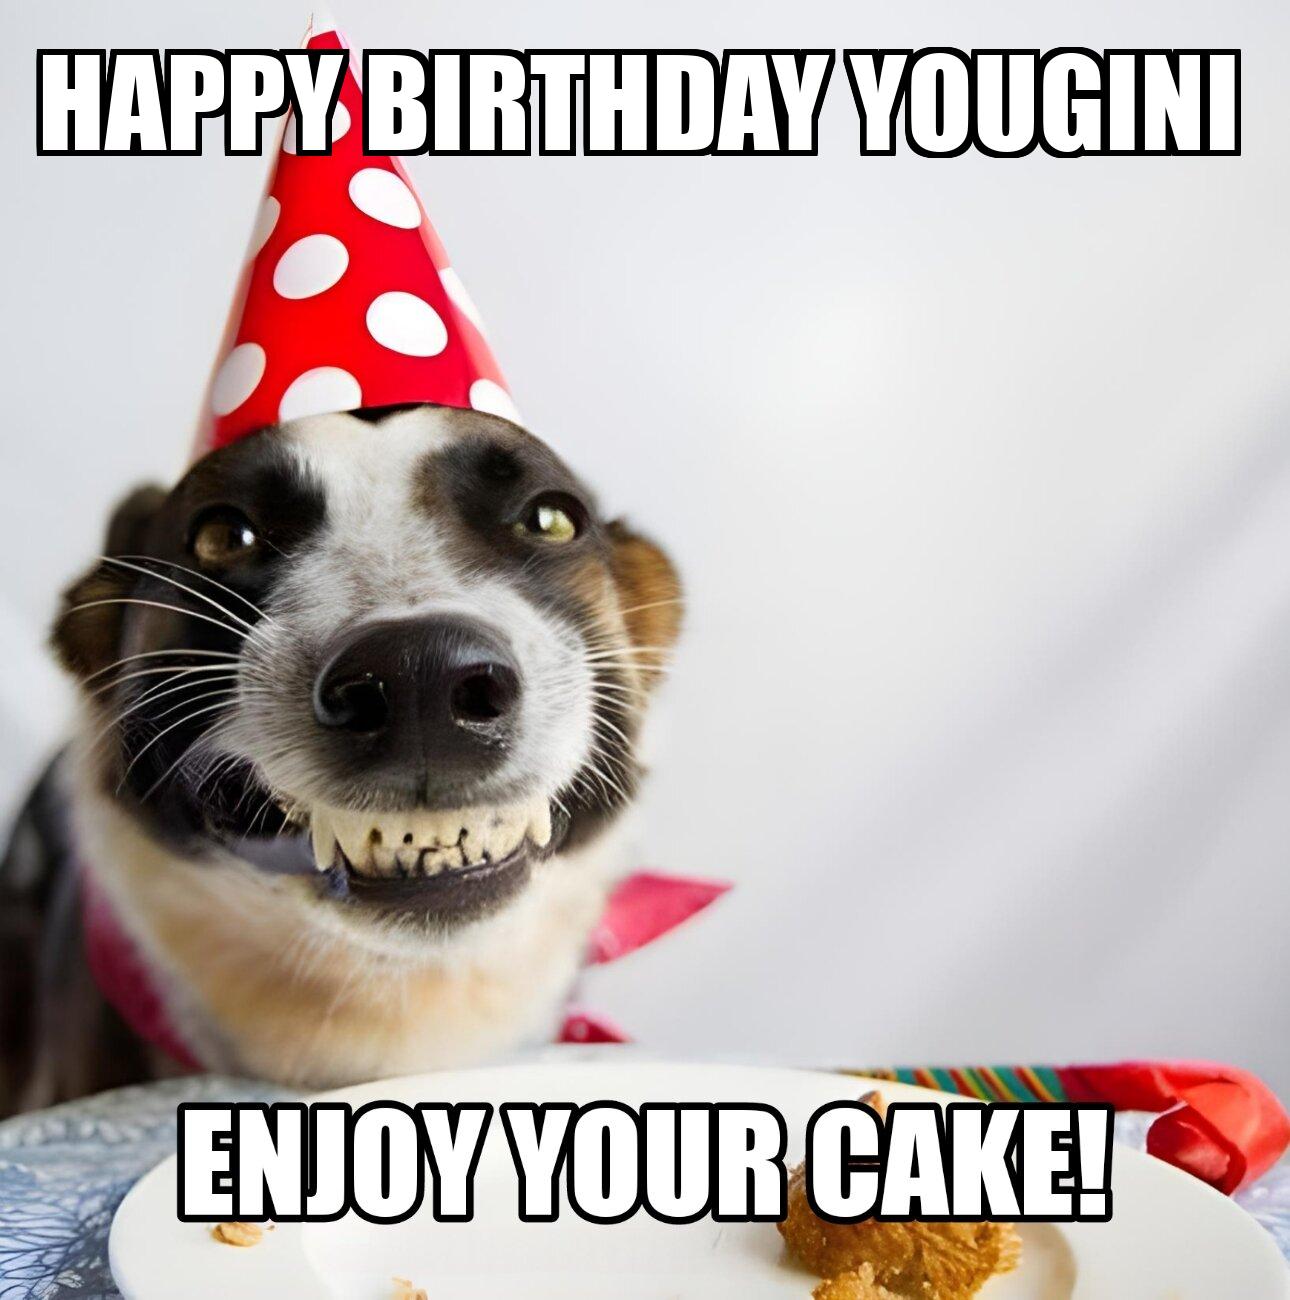 Happy Birthday Yougini Enjoy Your Cake Dog Meme